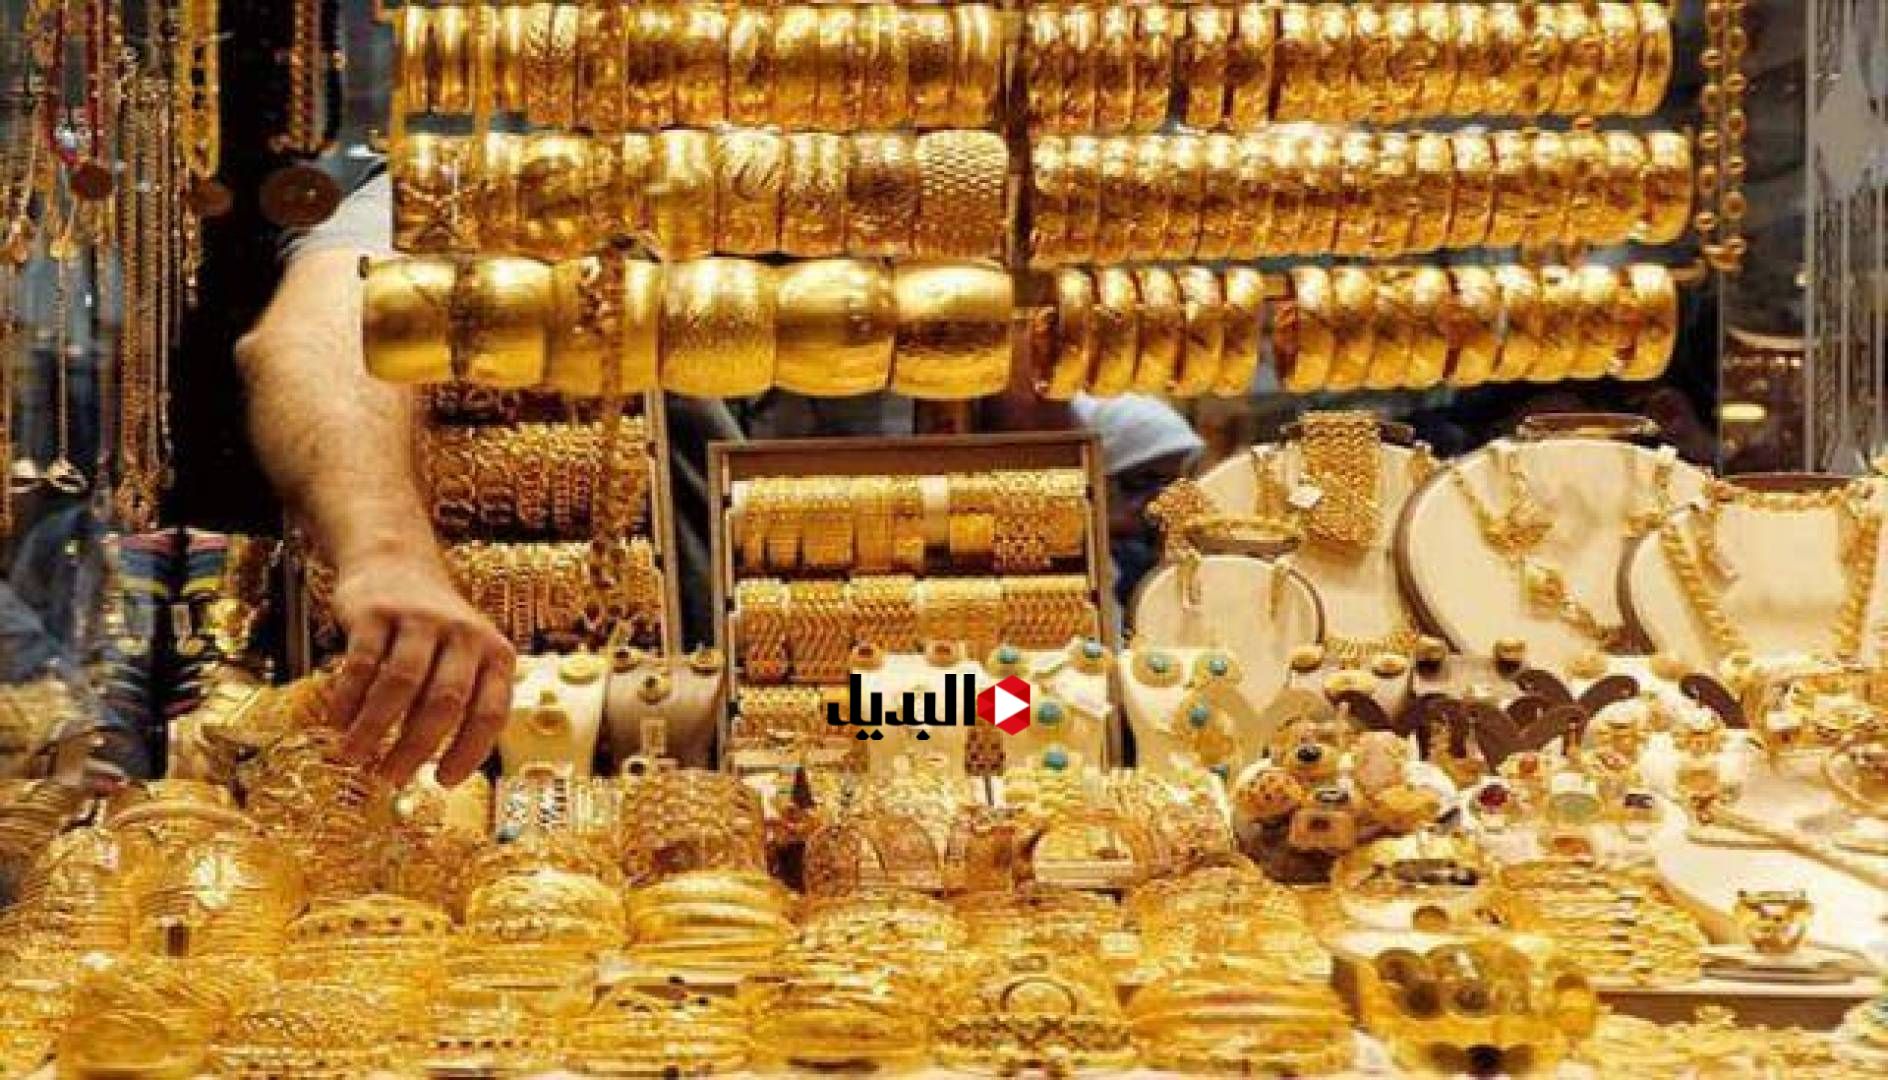 رجع نزل تاني.. هبوط غير متوقع في أسعار الذهب اليوم الجمعة 2 فبراير بعد قرار البنك المركزي بزيادة سعر الفائدة